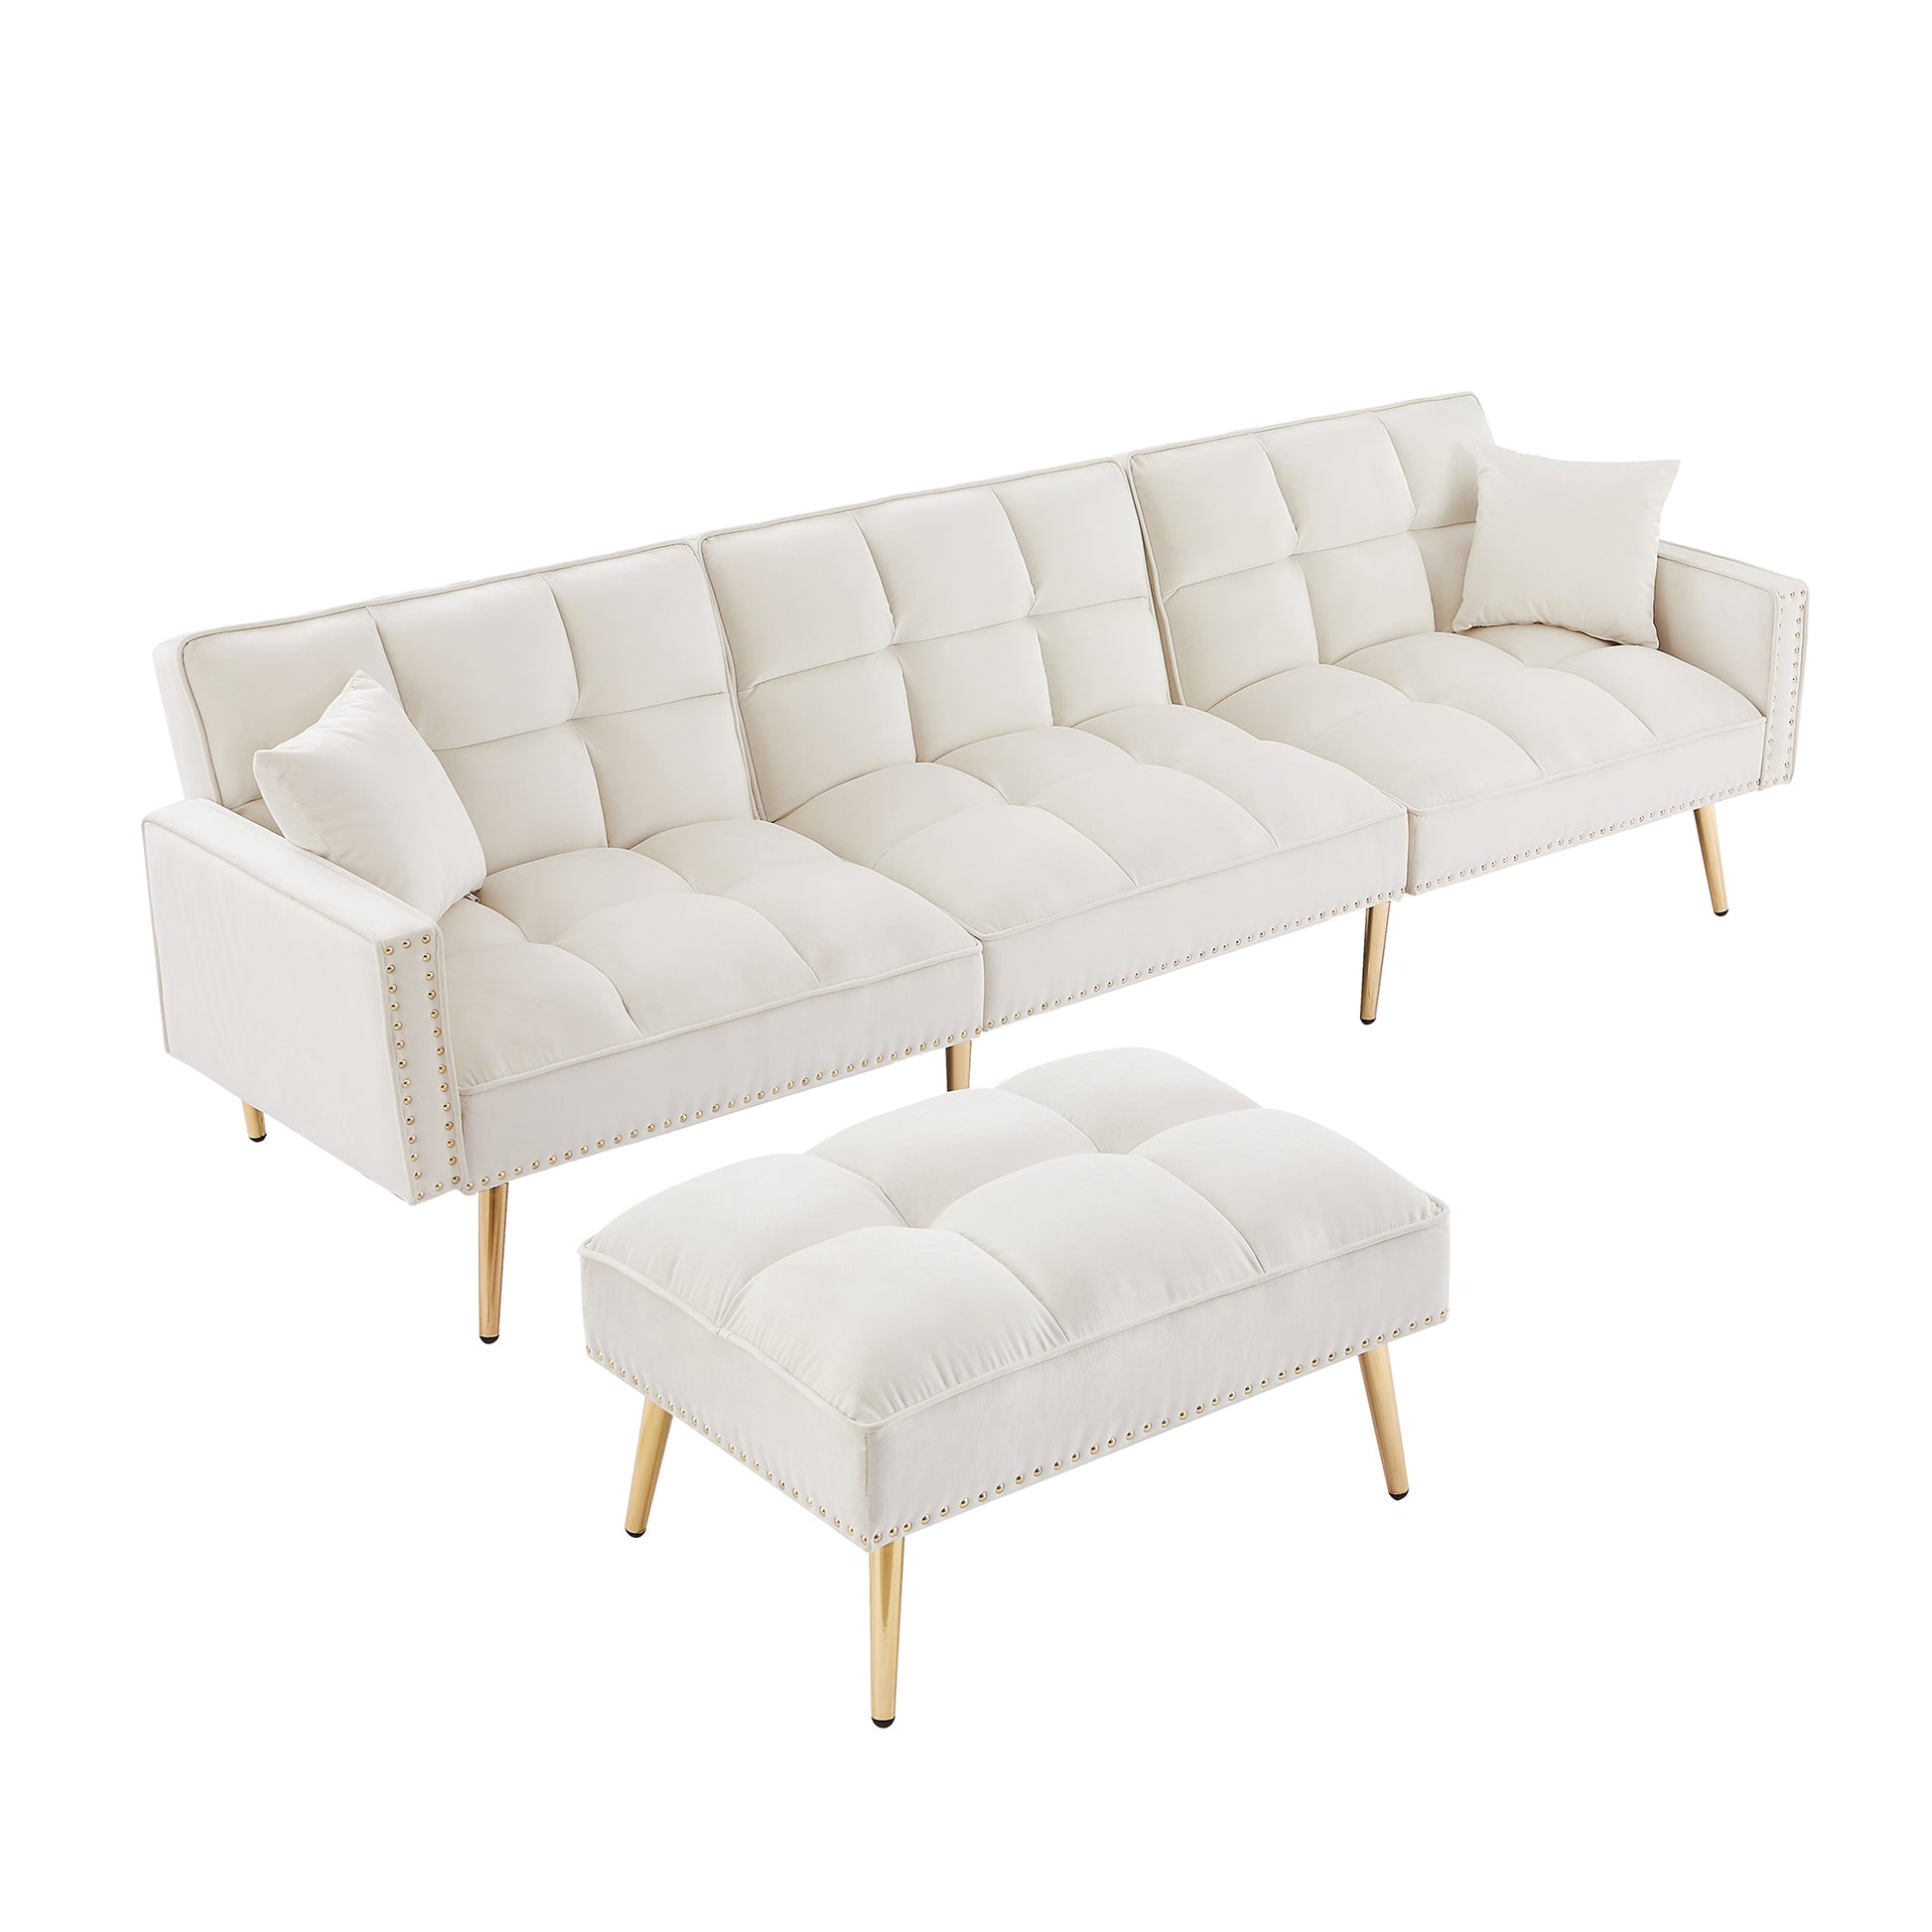 Modern Velvet Reversible Sectional Sofa Bed